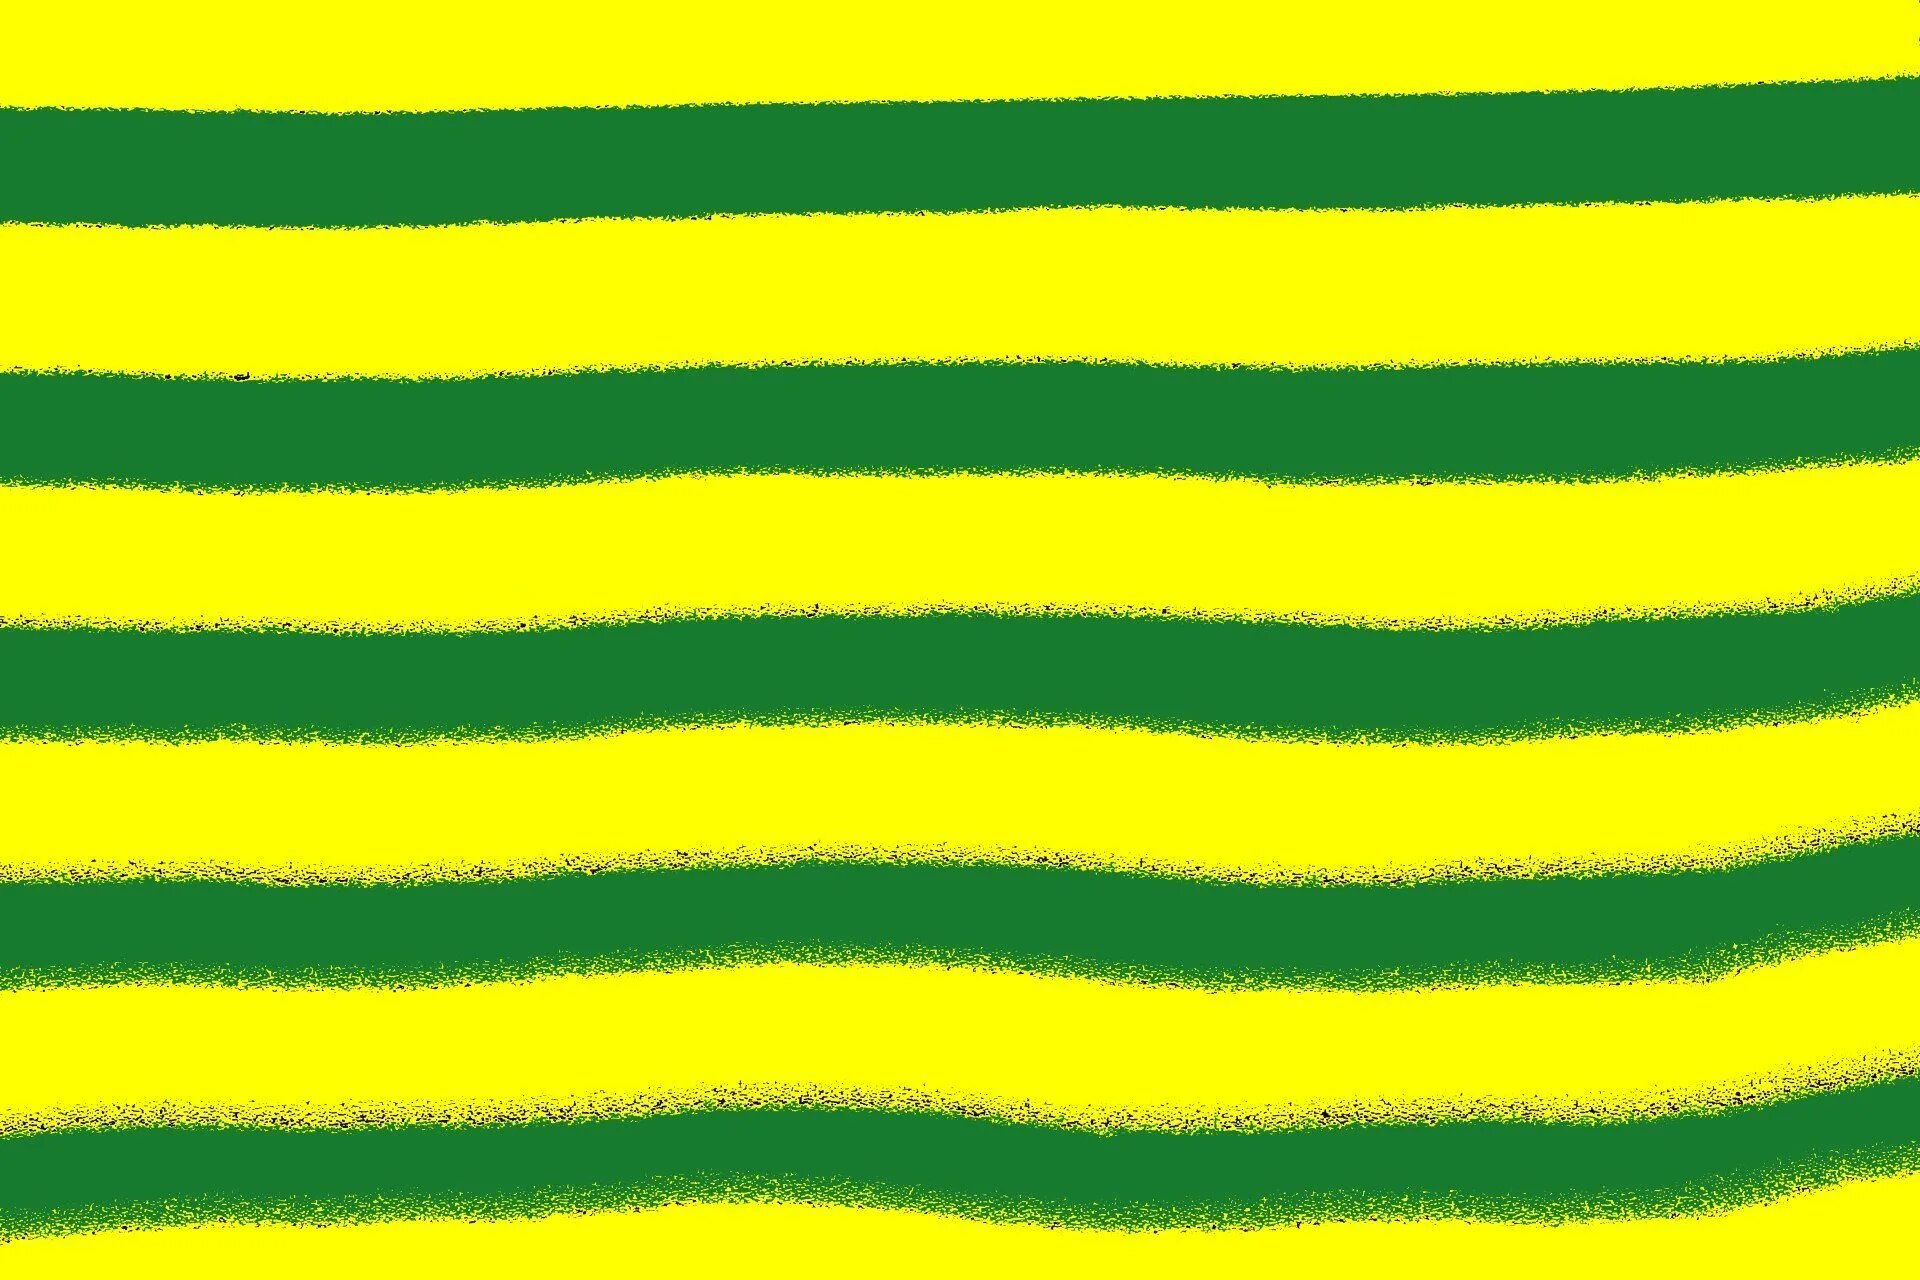 Три зеленых полосы. Желто-зеленые полосы. Желто зеленые полоски. Зеленая полоска яркая. Салатовая полоска.